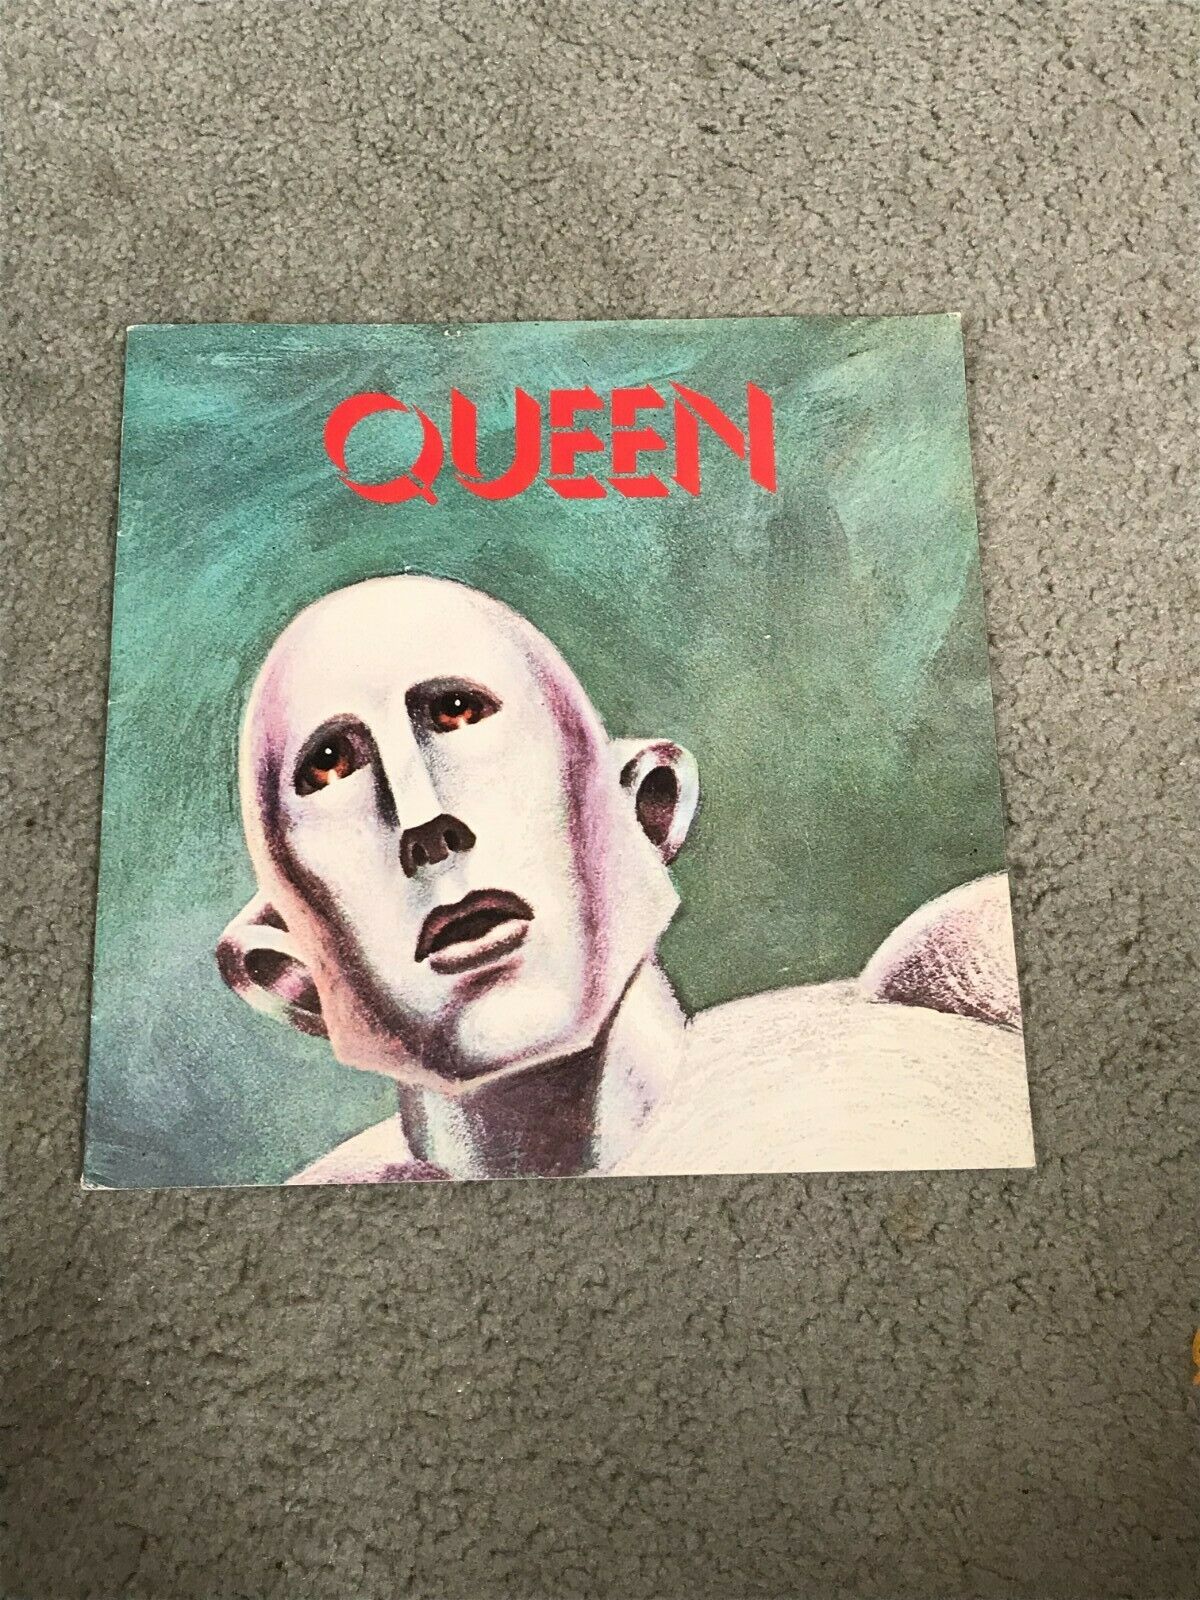 Queen 1977 News Of The World Concert Brochure